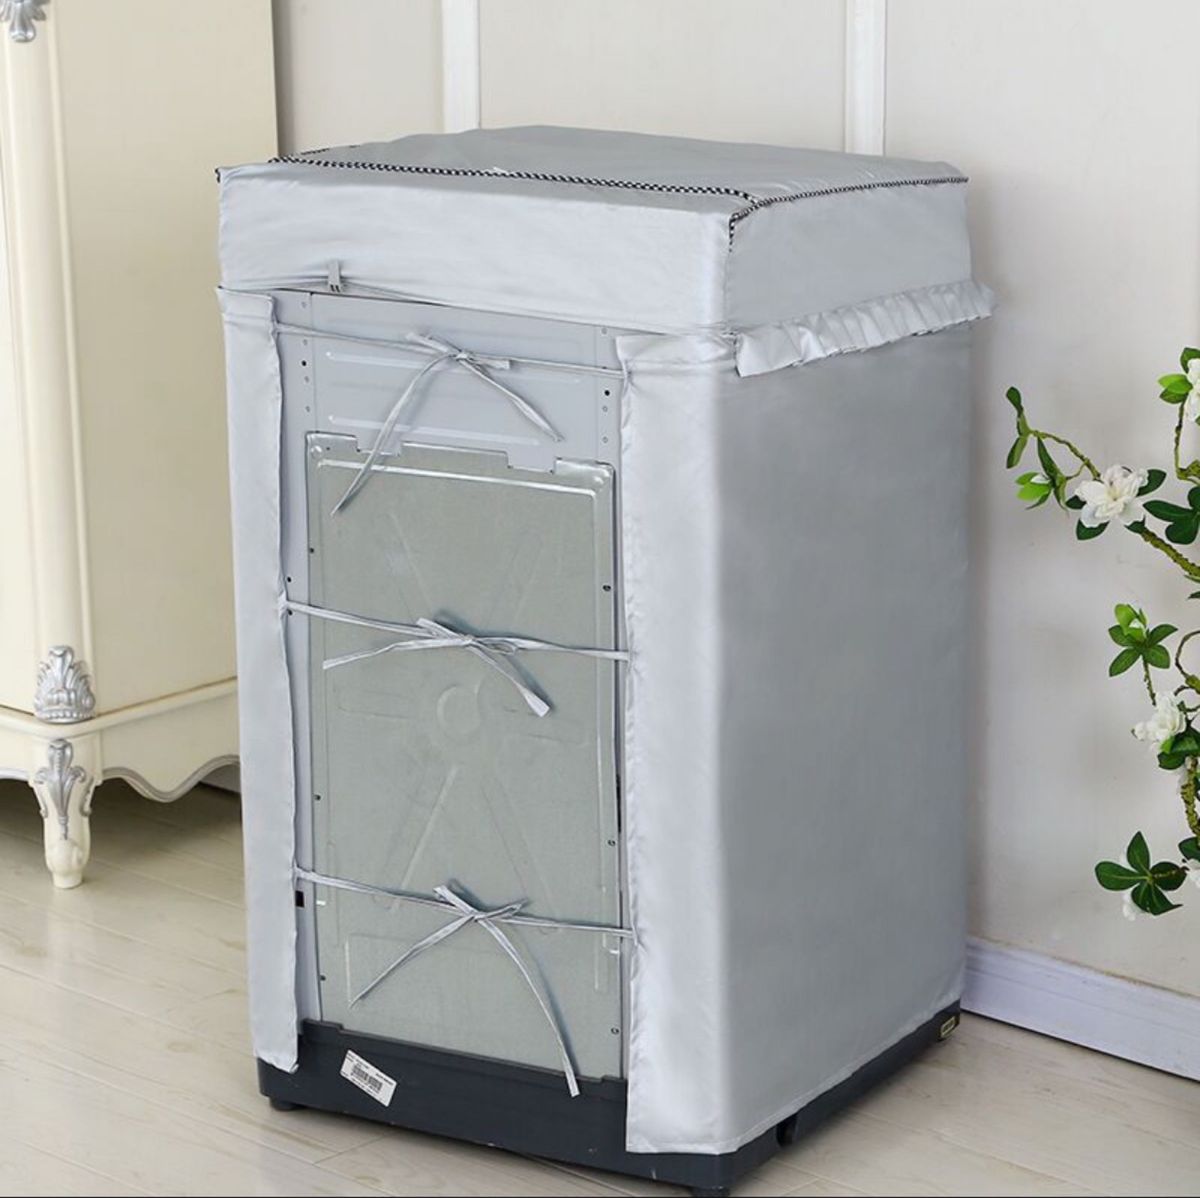 L 洗濯機 カバー 防水 日焼け防止 全自動式 丈夫 屋外 防湿